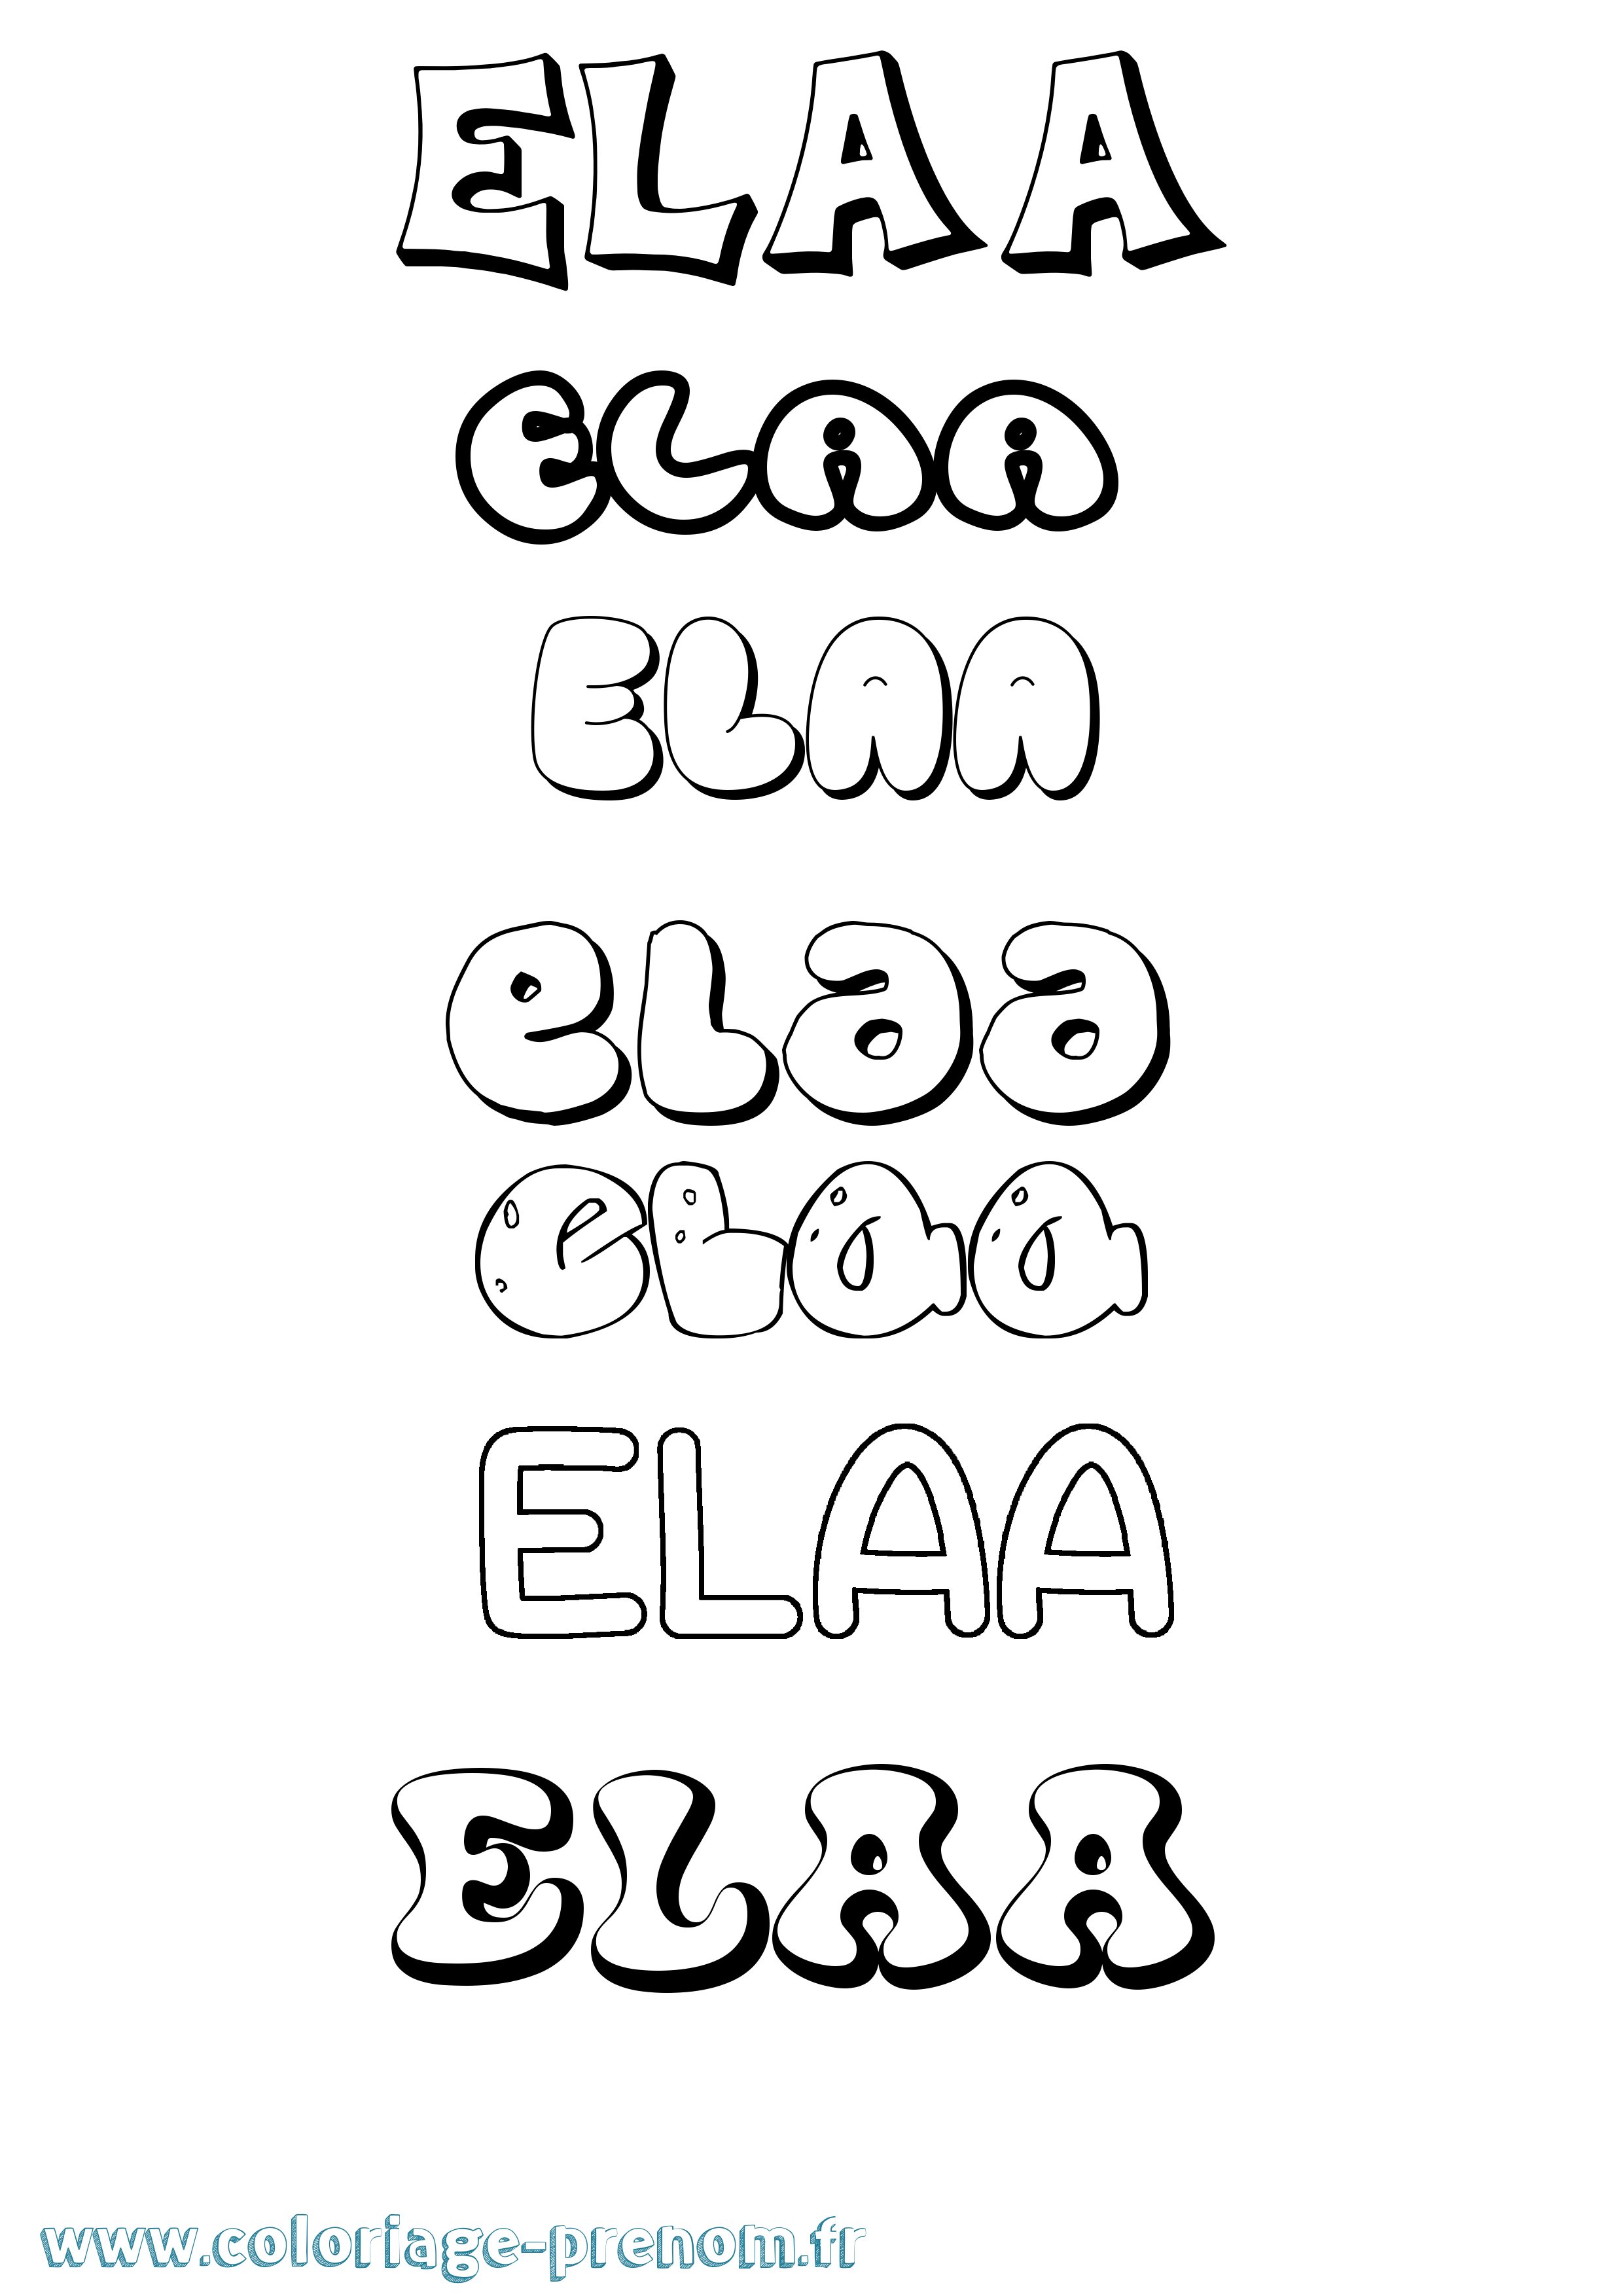 Coloriage prénom Elaa Bubble